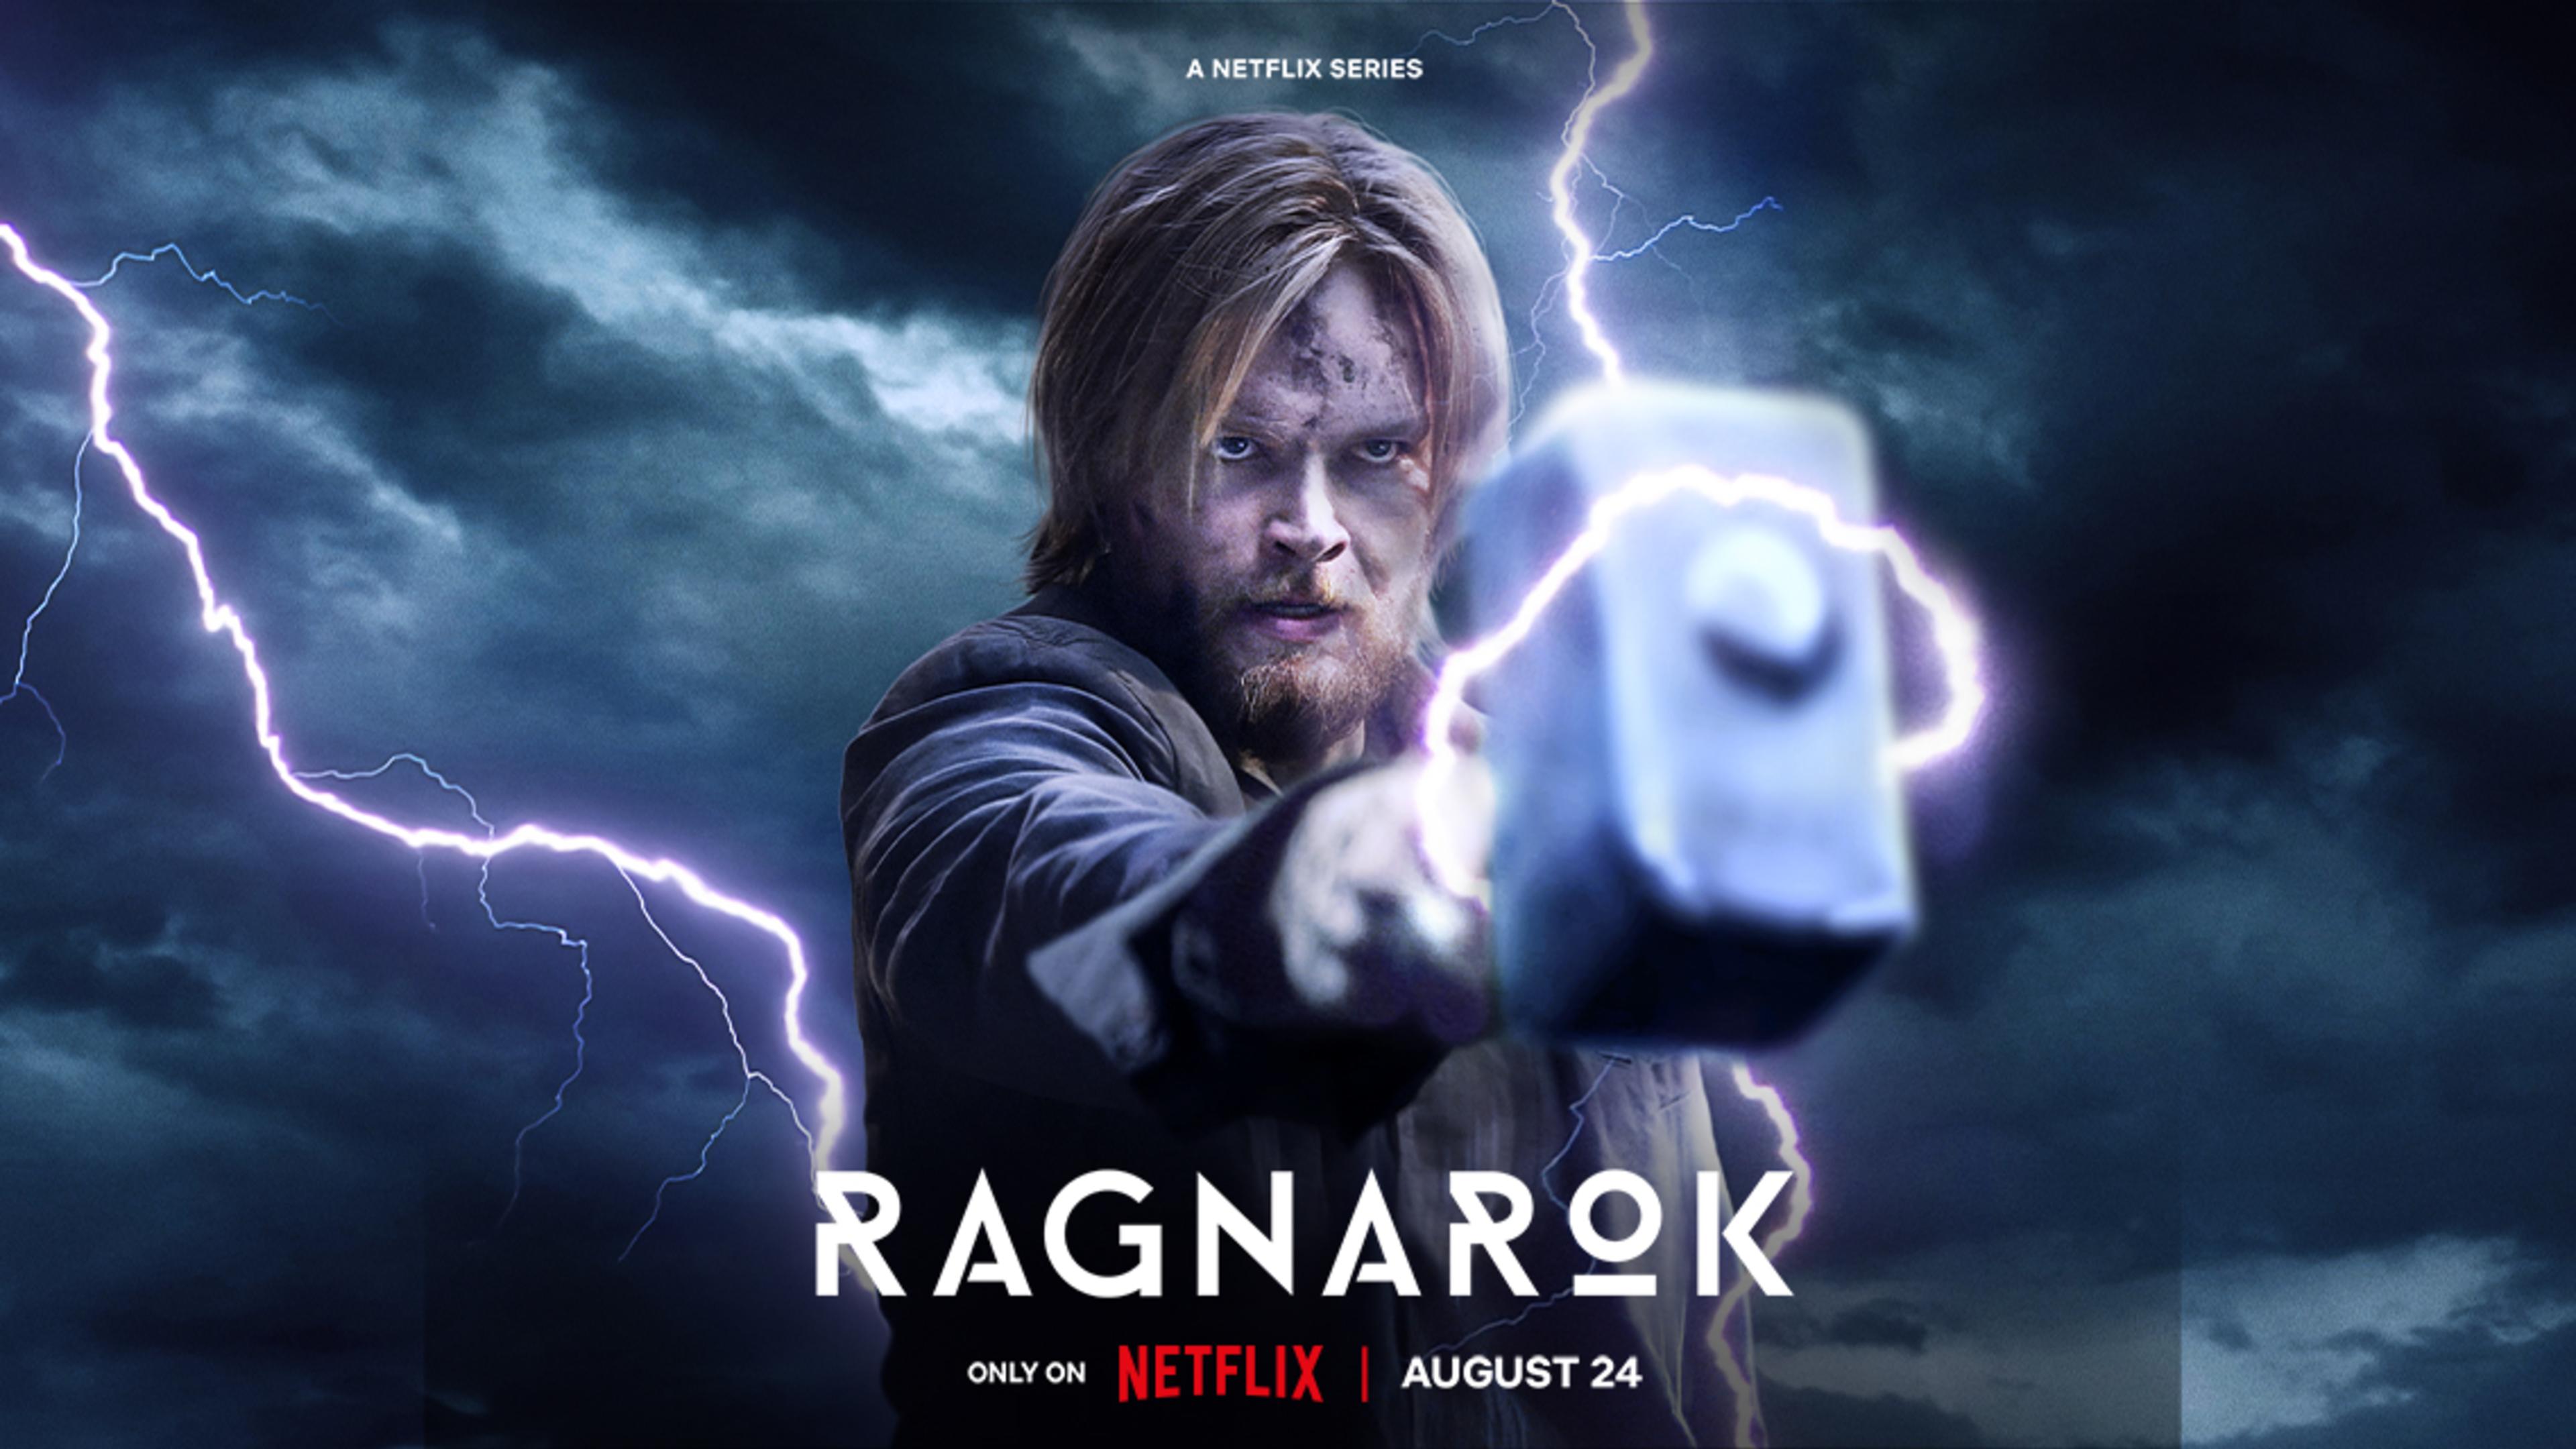 Ragnarök Säsong 3 har premiär den 24/8 på Netflix. Möt den sista striden när gudar och jättar ställs mot varandra. Magne kämpar för att undvika sitt förutbestämda öde när obevekliga krafter smider nya planer.